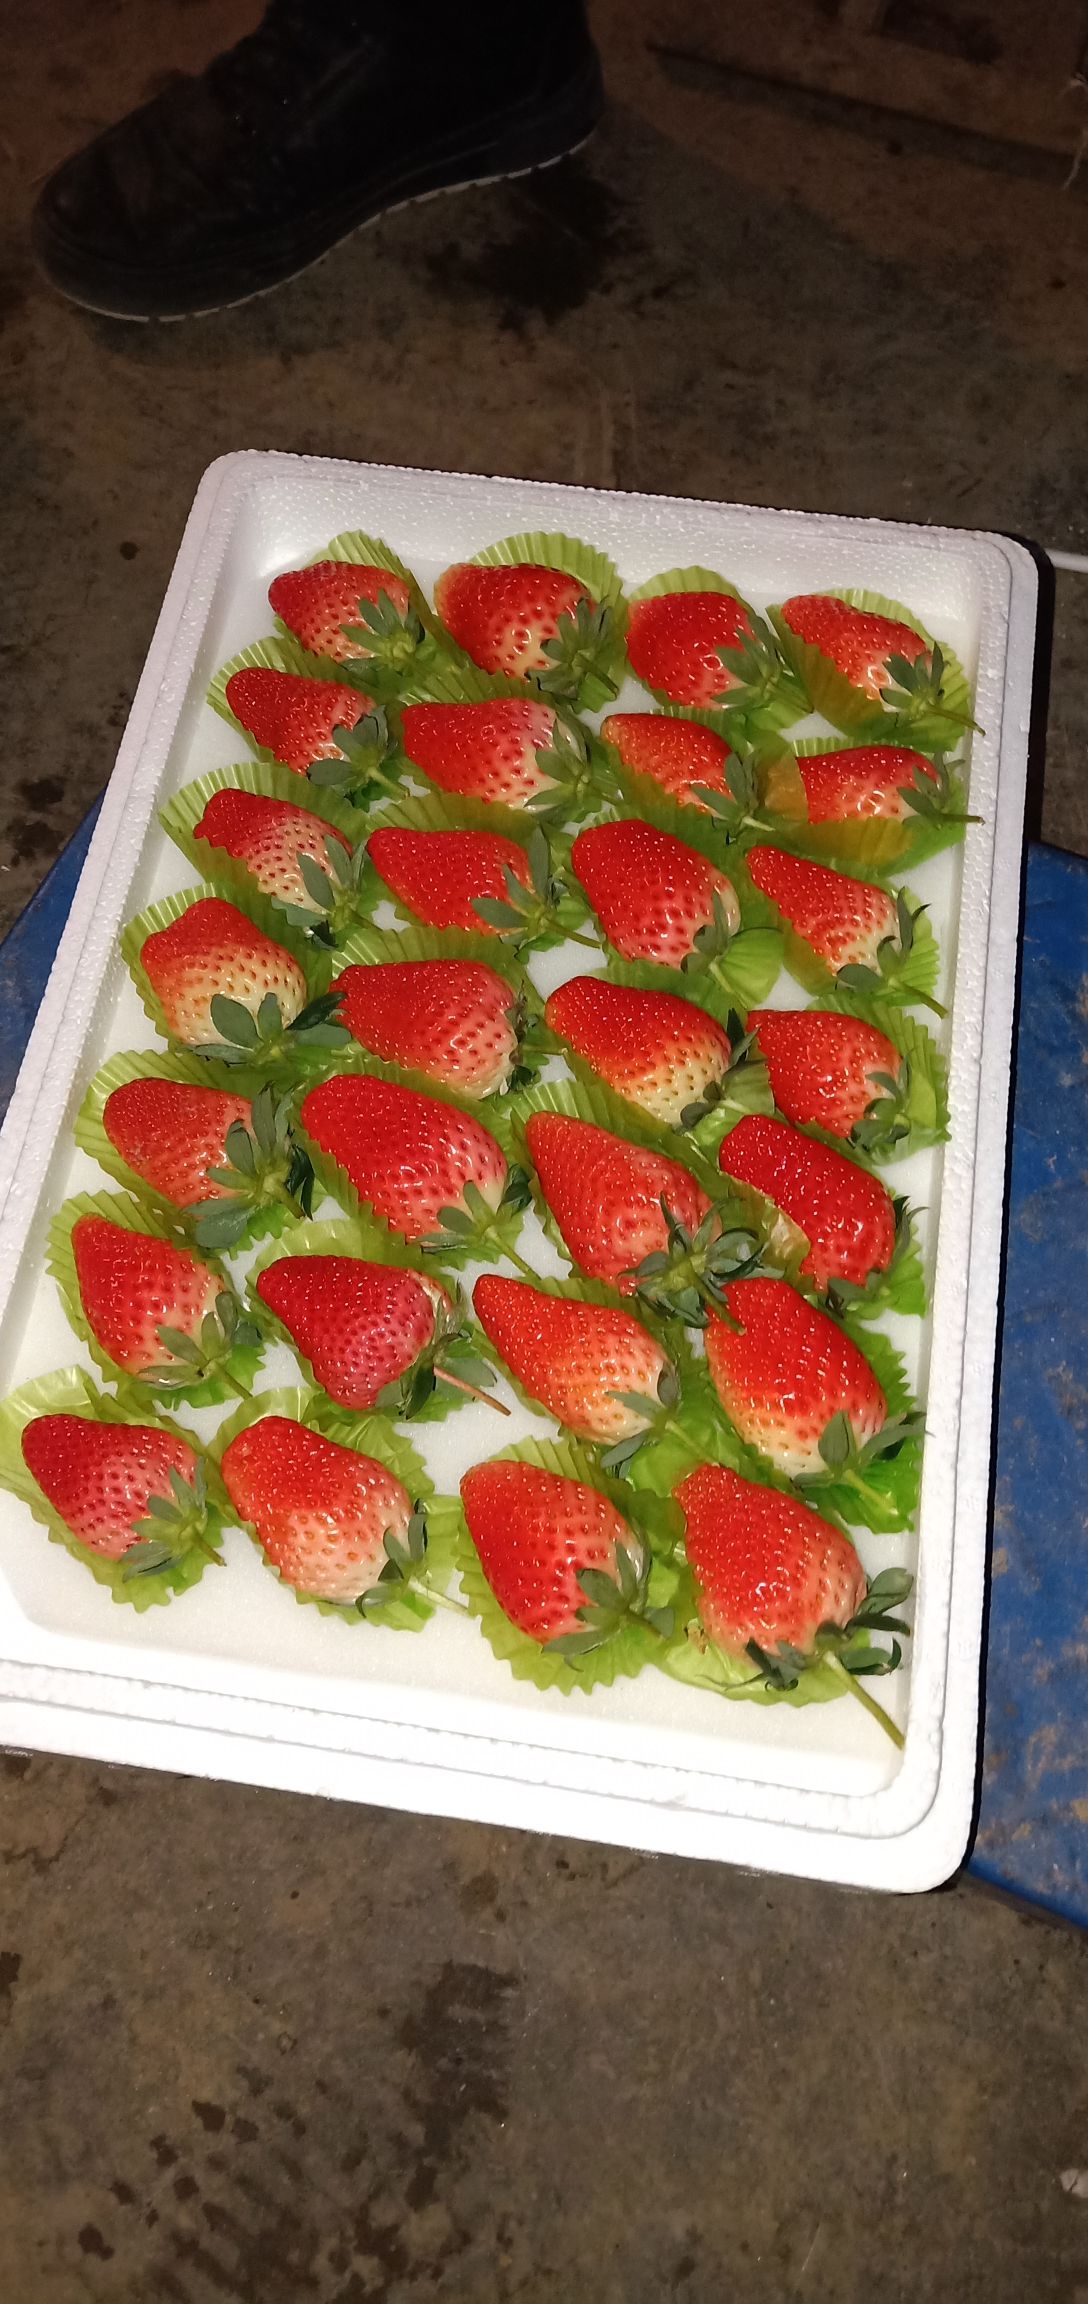 品种名:甜宝草莓 品种名:甜宝草莓 单颗重:30克以上 货品包装:泡沫箱